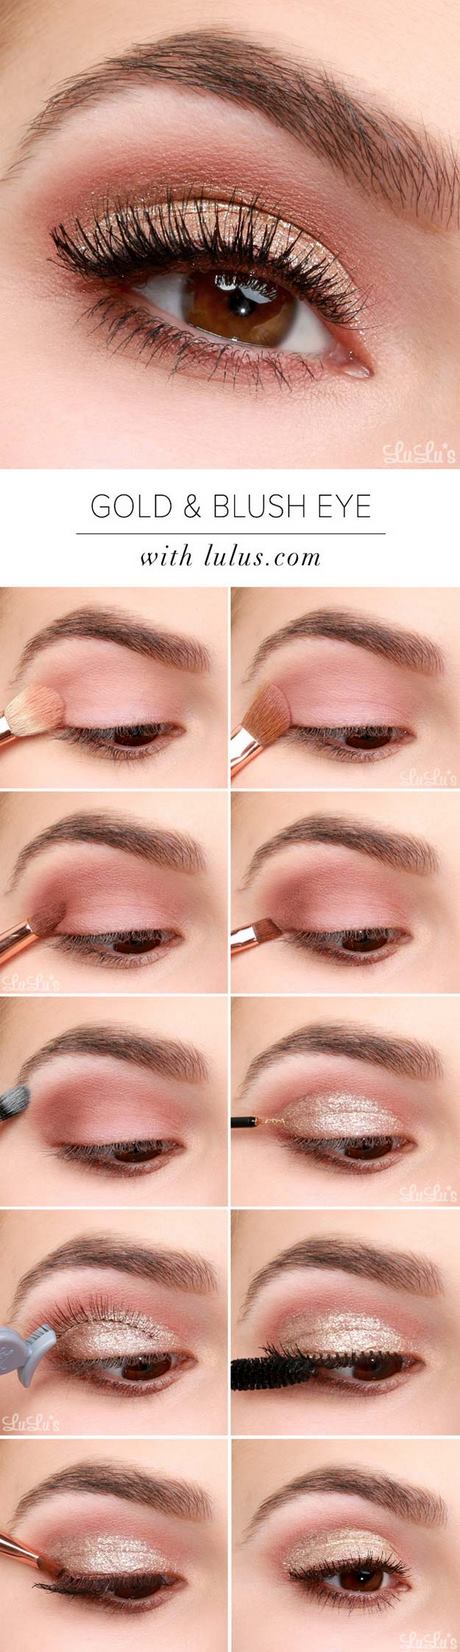 makeup-eye-tips-03_10 Make-up oogpunten